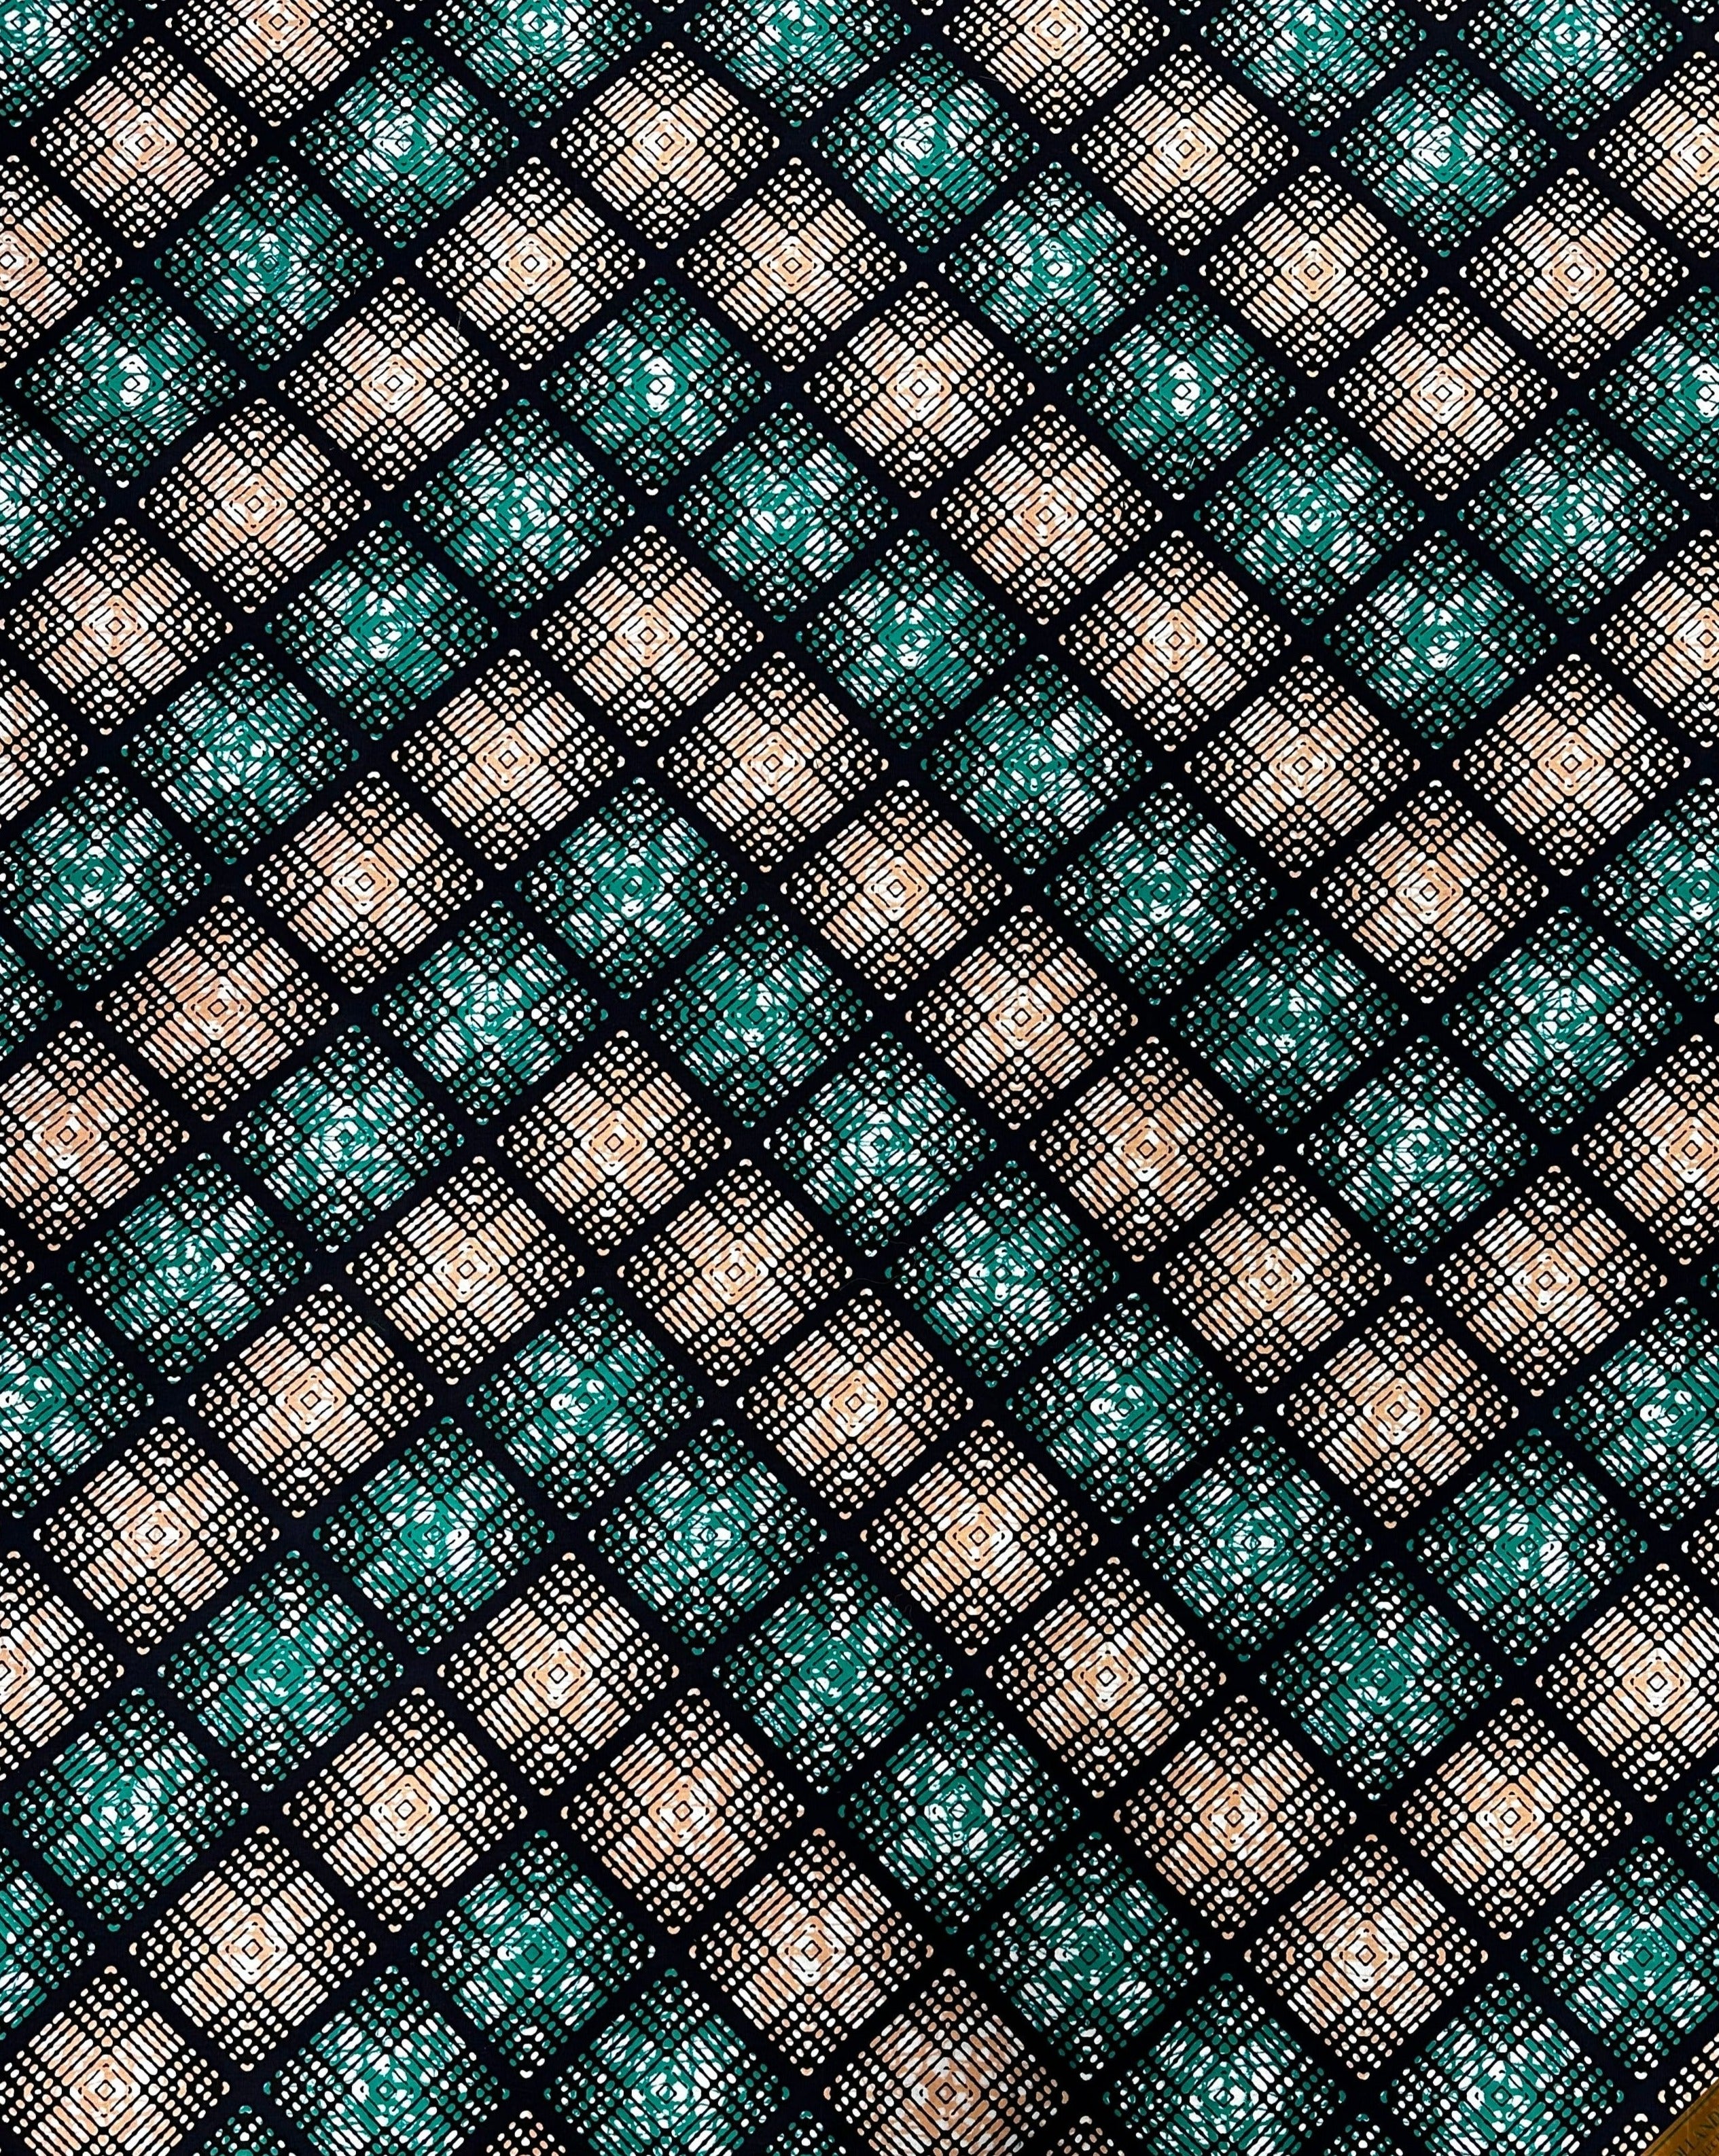 Starburst Grid: Exquisite African Print Fabric - 100% Cotton